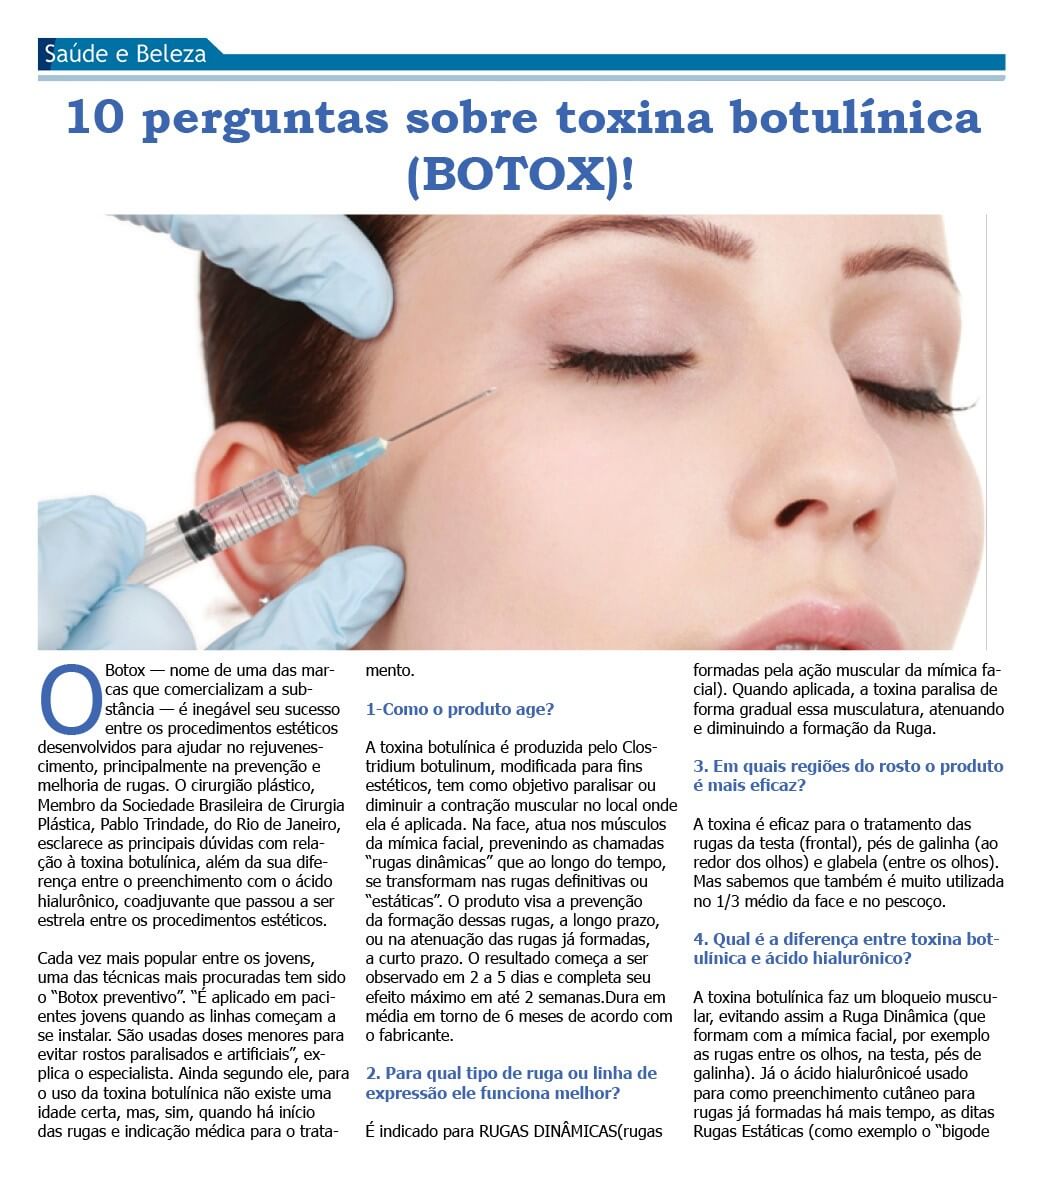 Dr. Pablo Trindade especialista em Ipanema e Duque de Caxias. Matéria sobre toxina botulínica (botox).